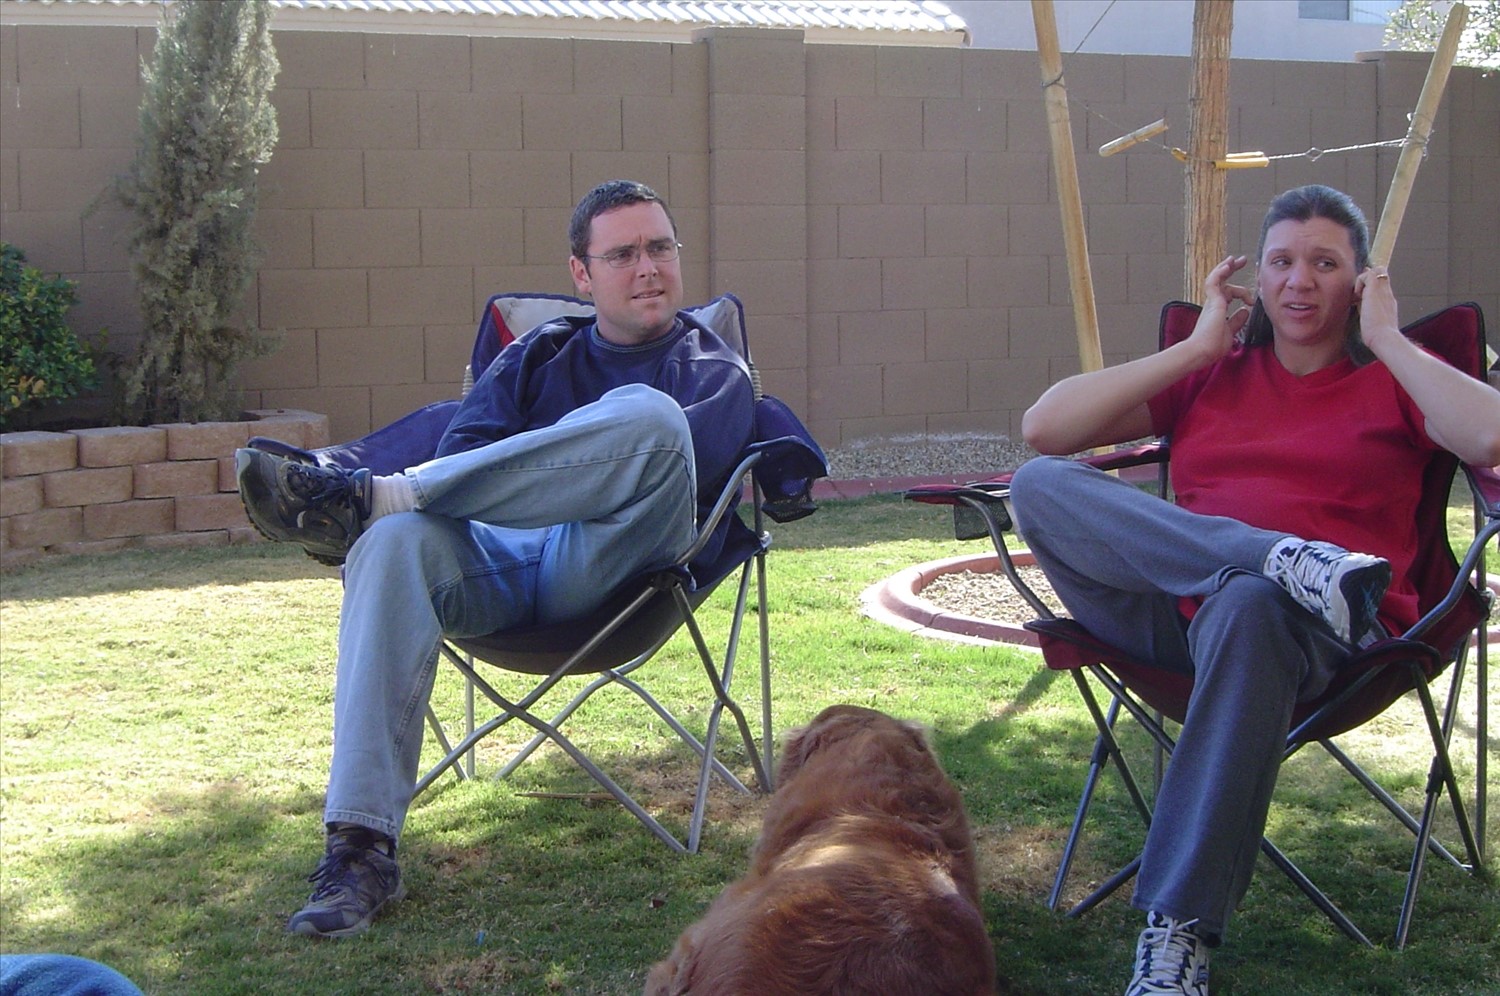 Hanging in the backyard. Jeanella&Stacy_Clark.jpg. Uploaded by Erik Hoffmann on 2/24/2004. 